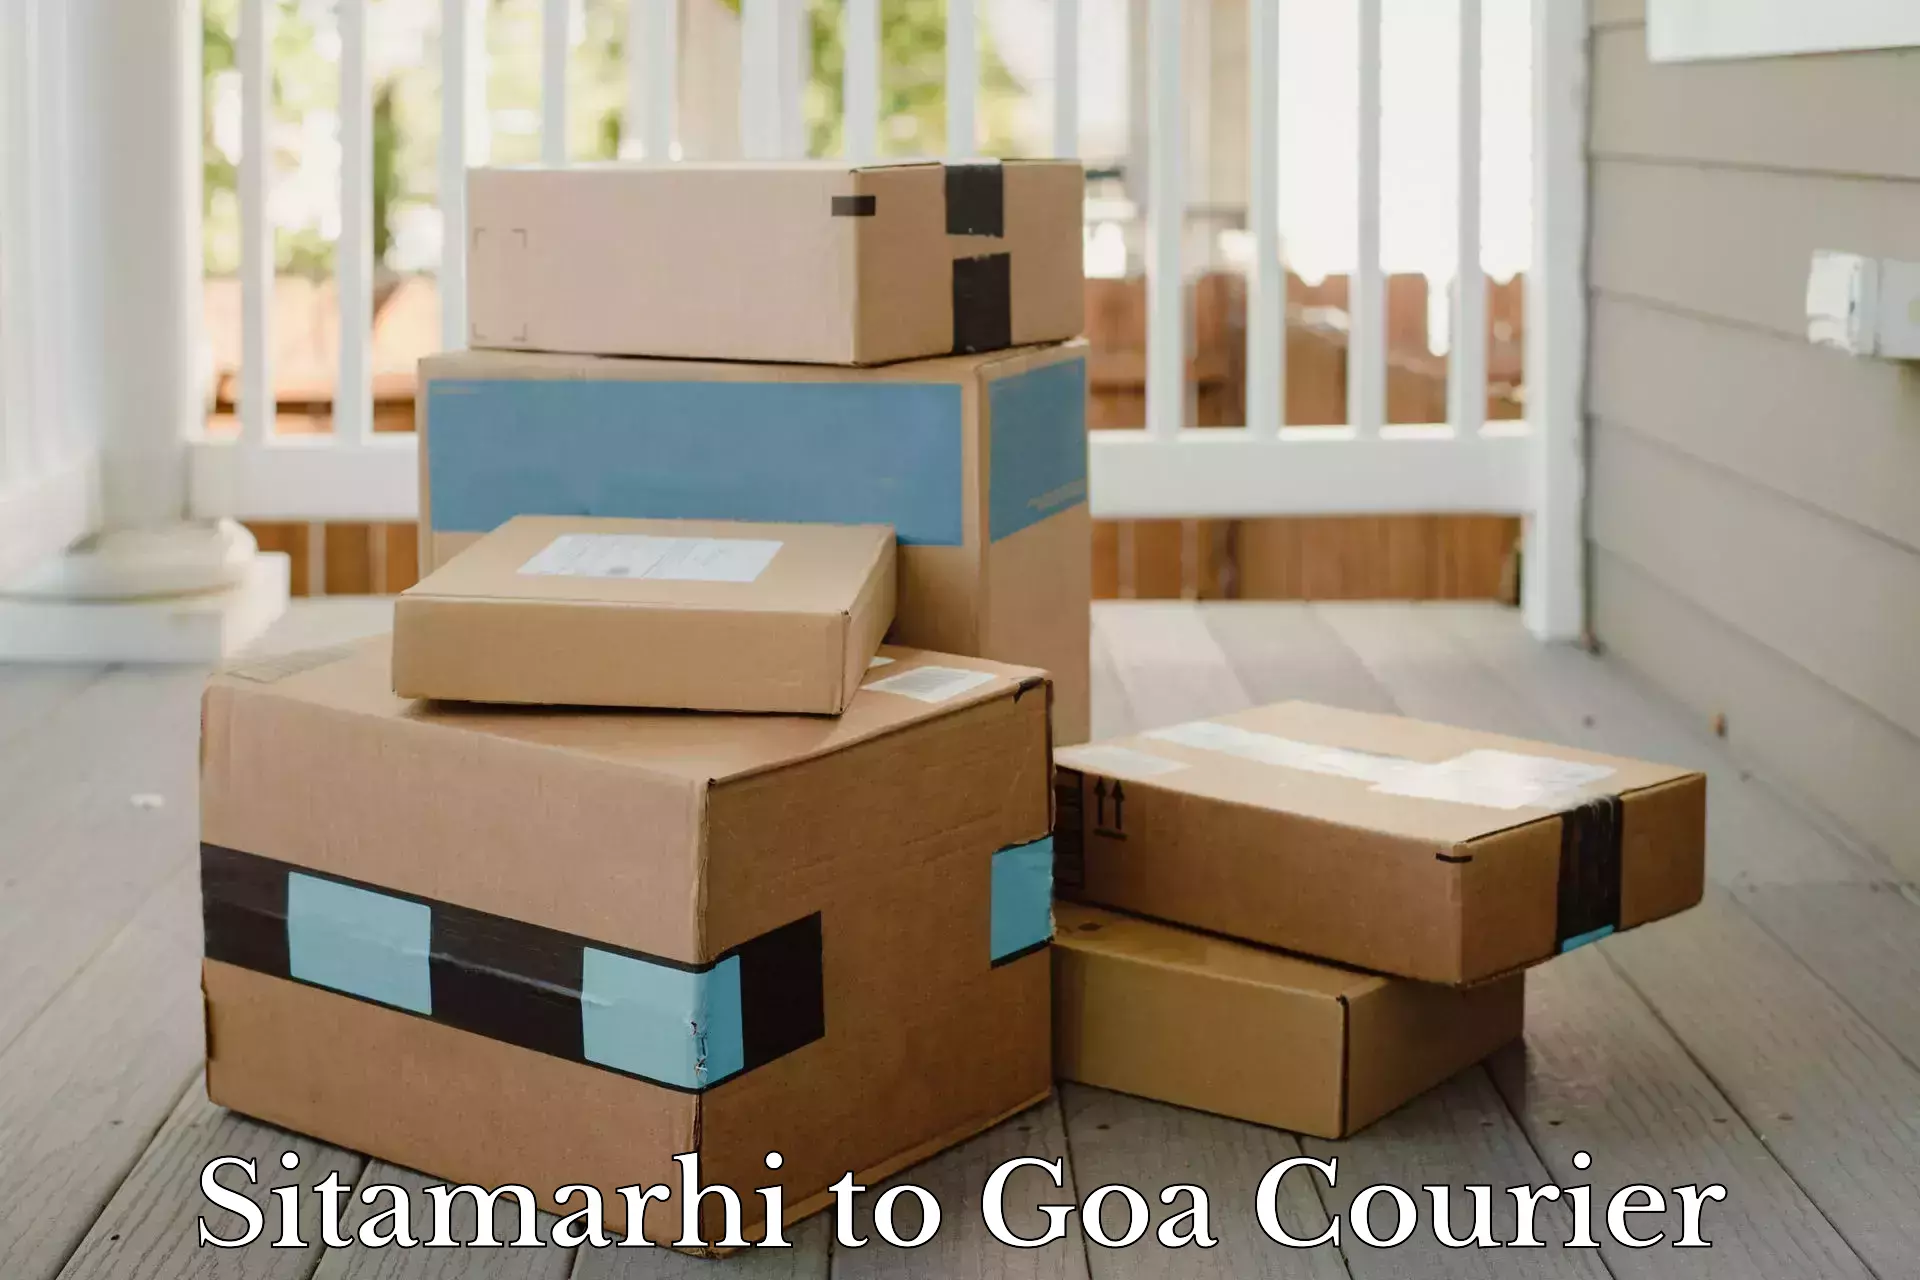 Efficient parcel service Sitamarhi to Panaji